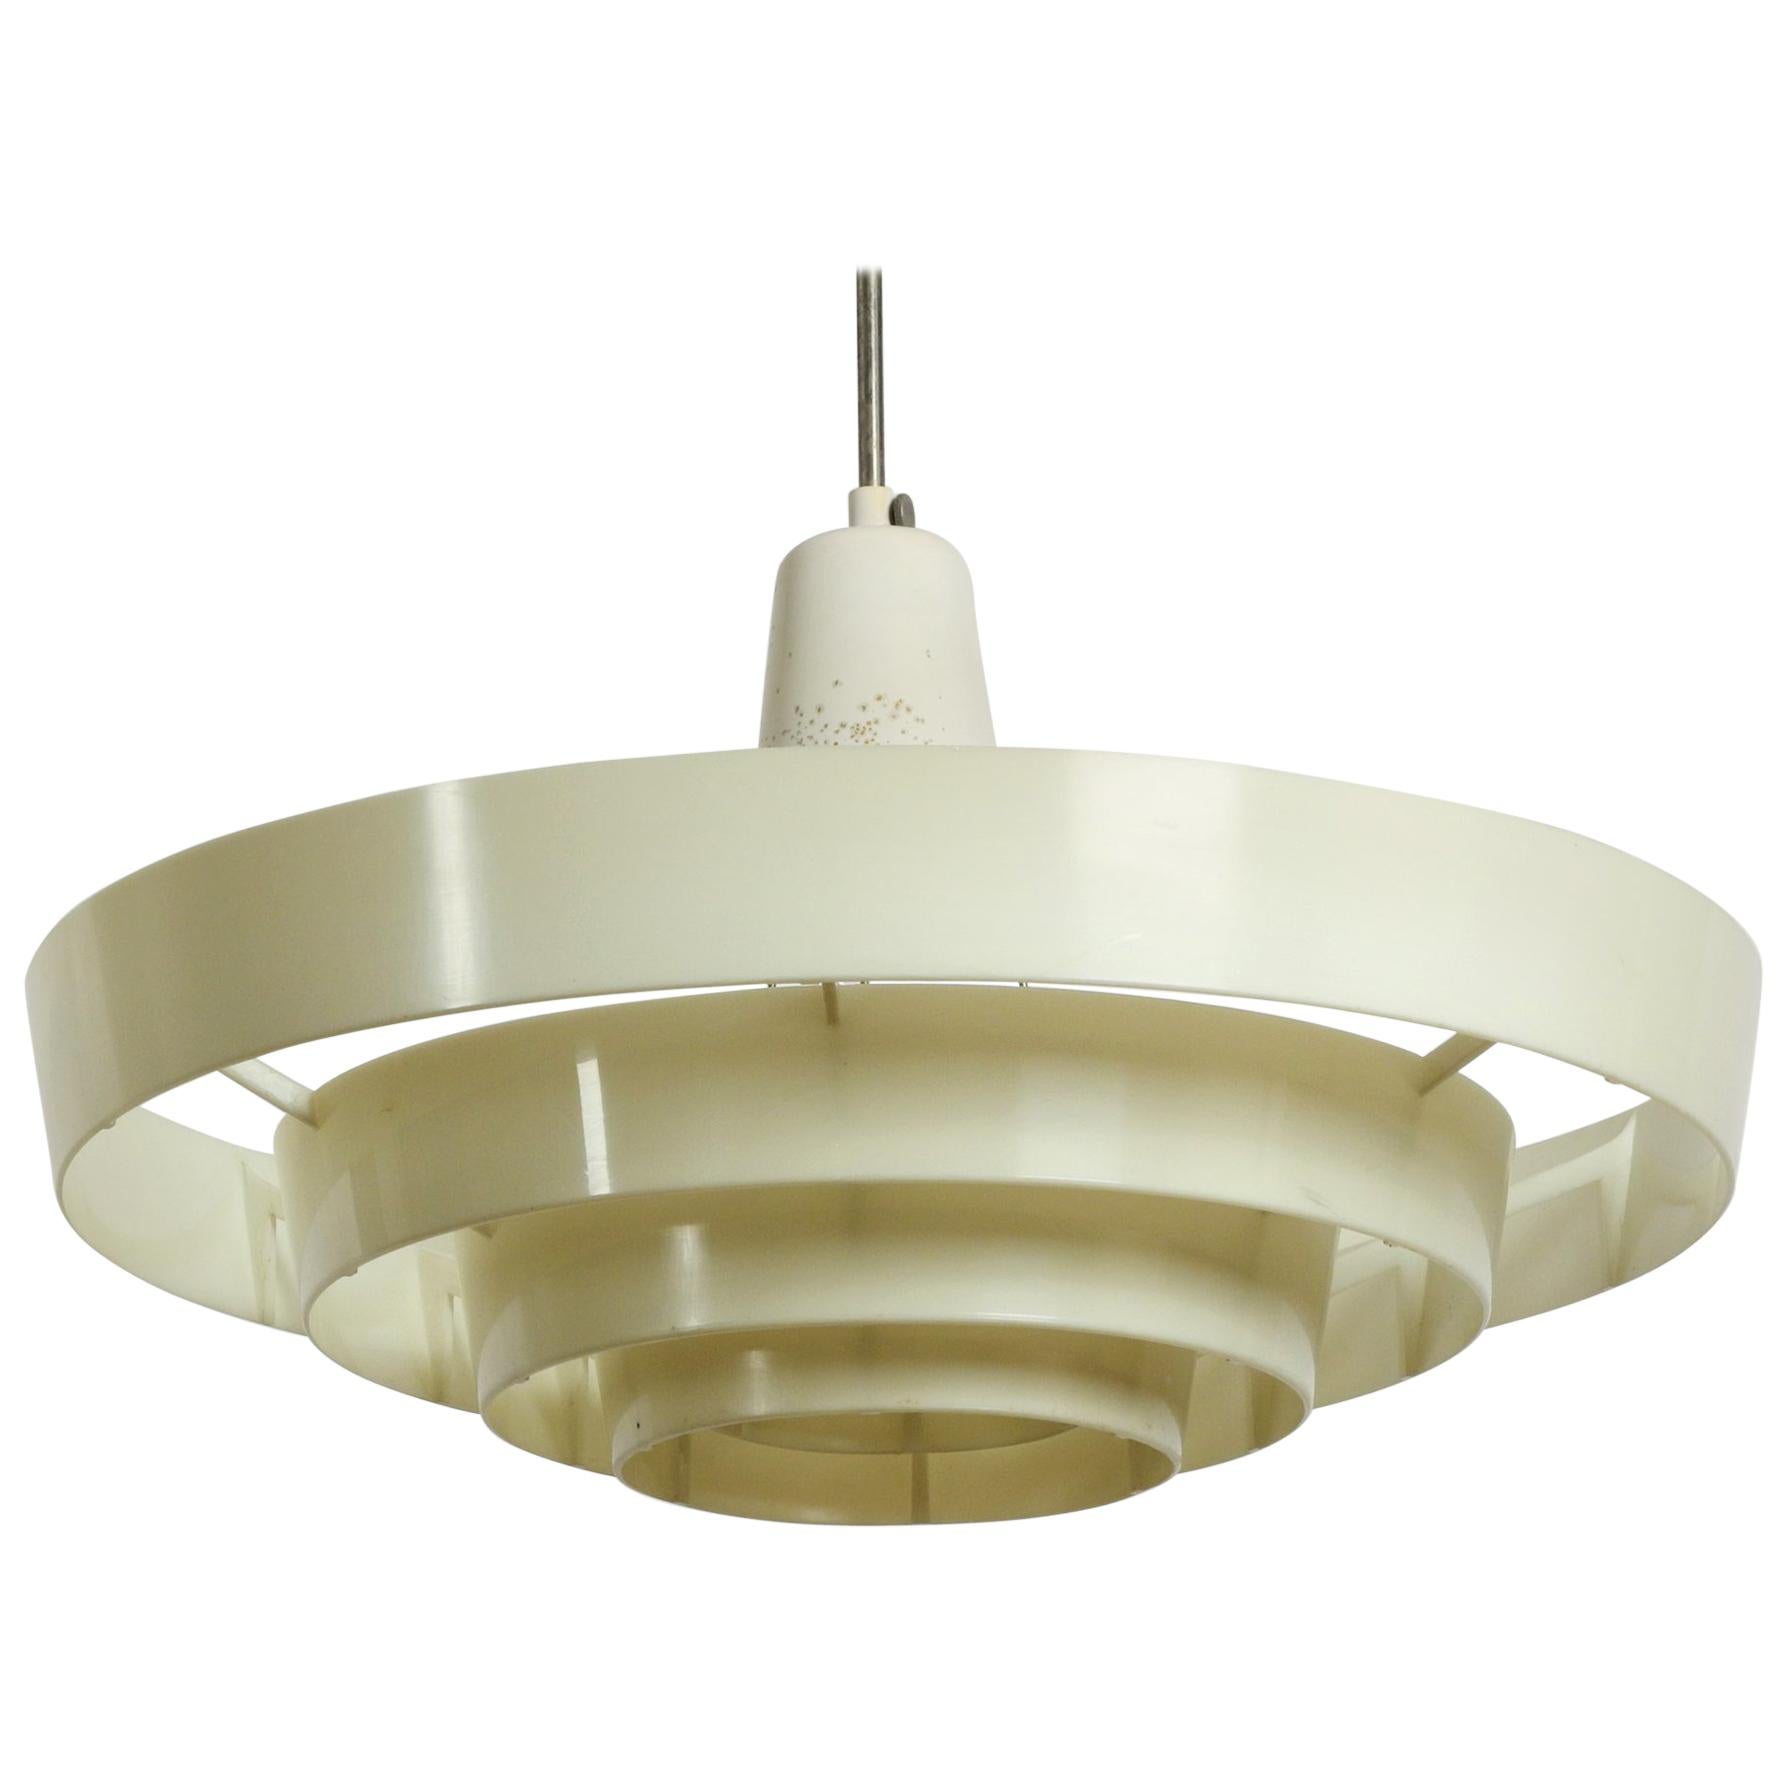 XXL Art Deco Modernist industrial slat ceiling lamp from Siemens & Schuckert